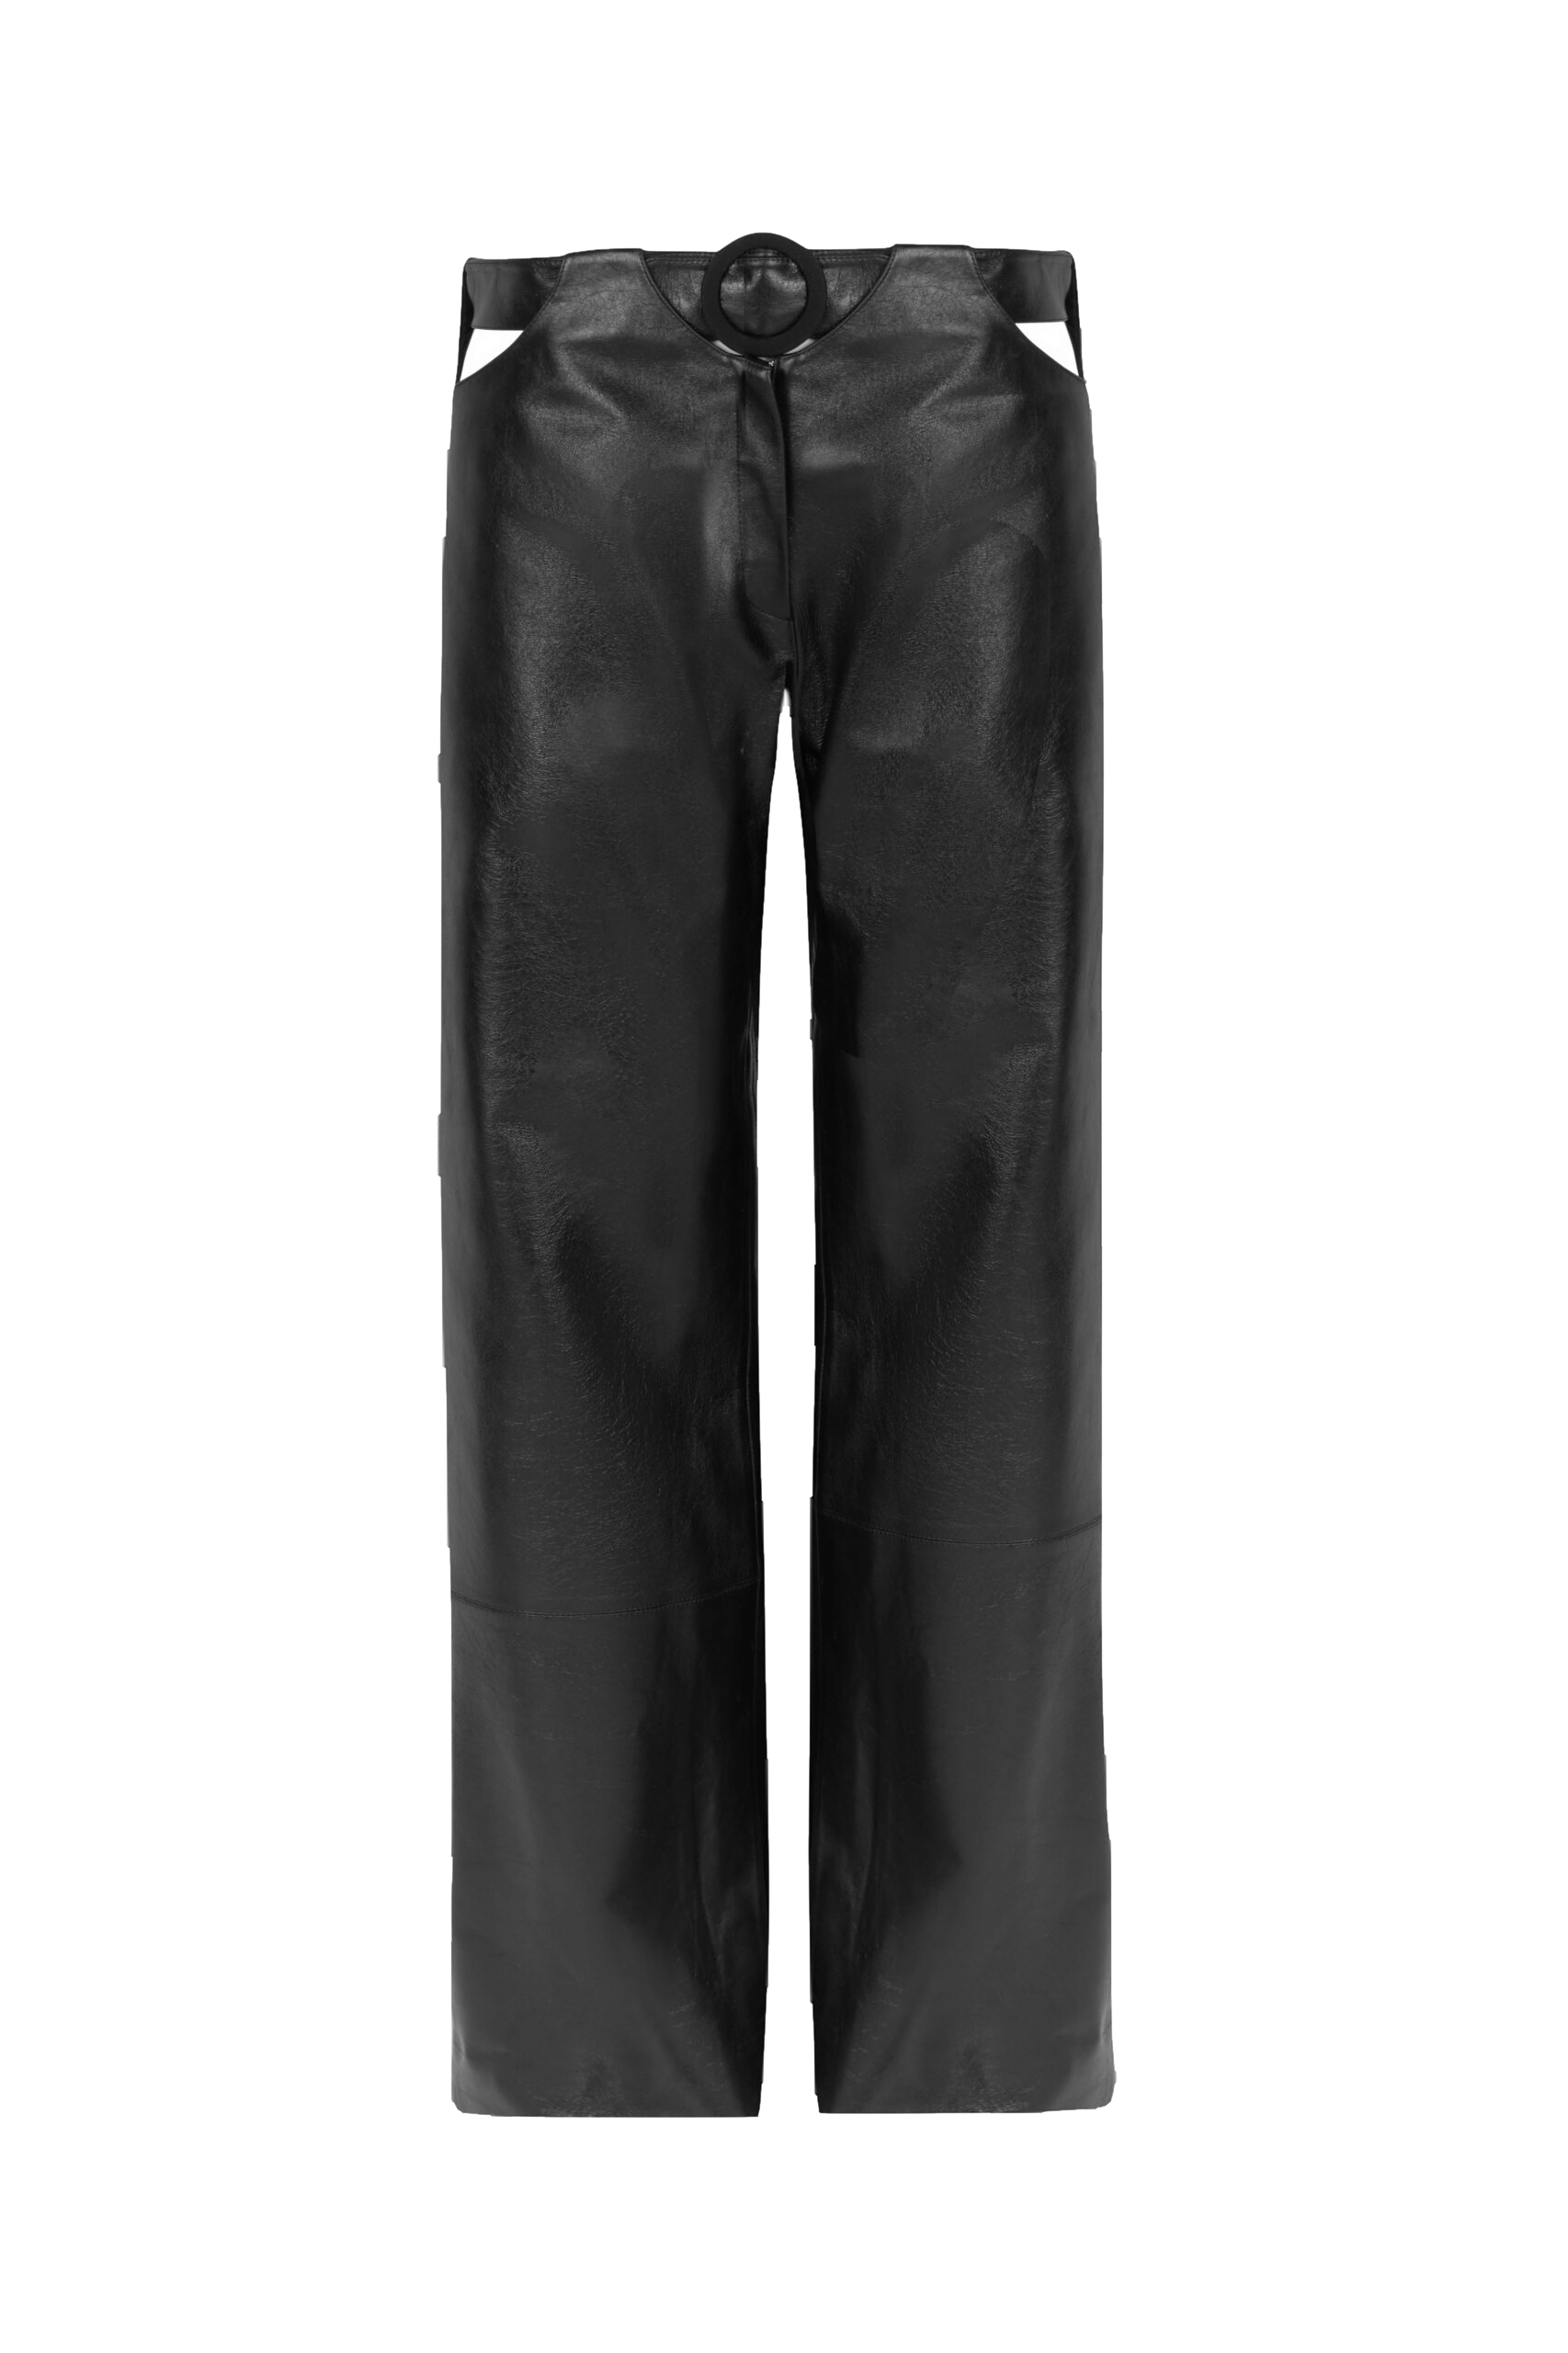 F.ilkk Black Leather Pants